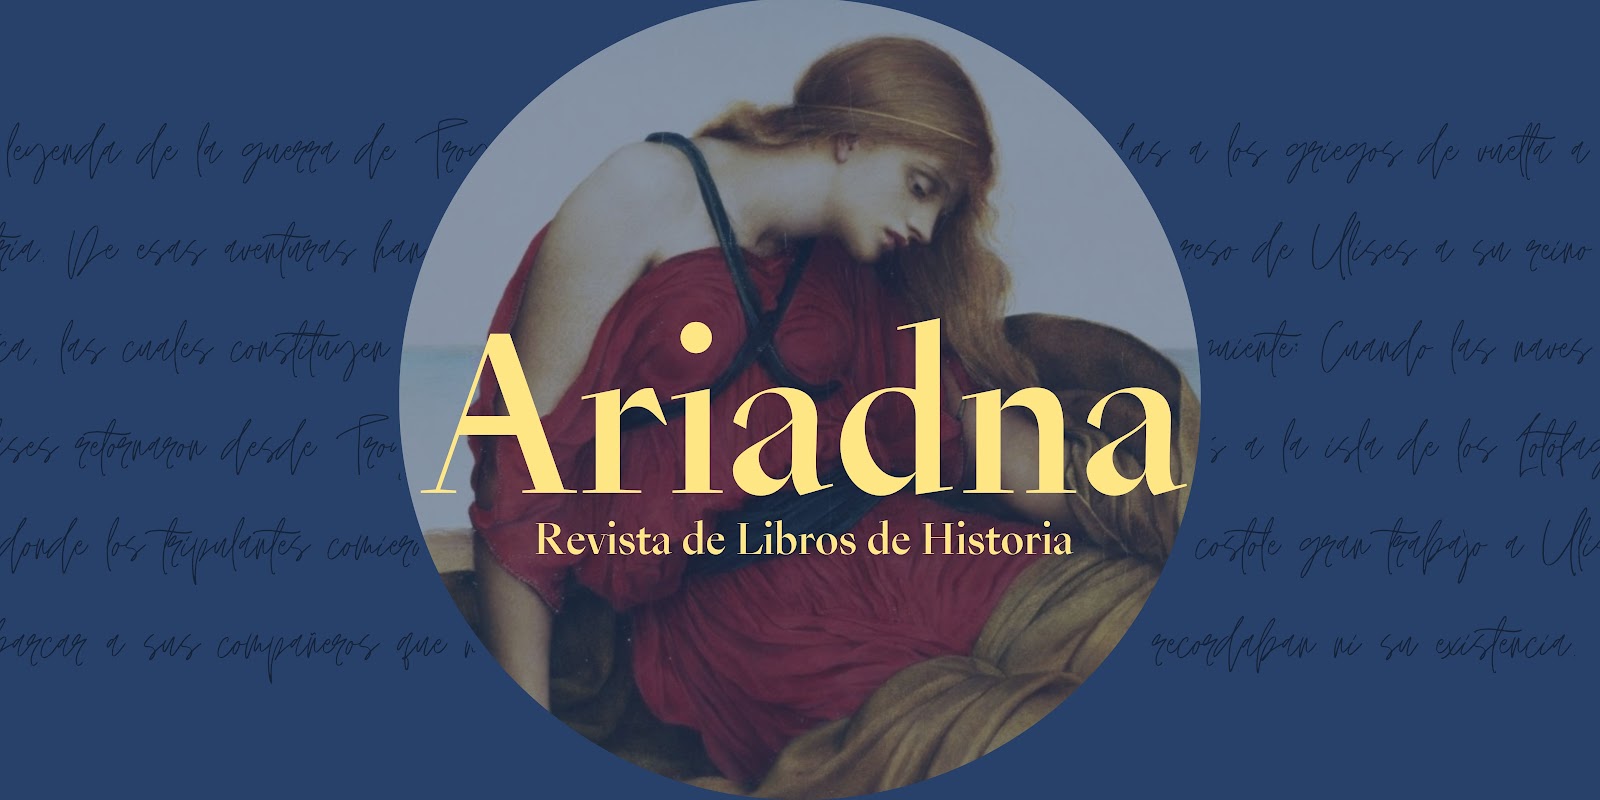 Ariadna. Revista de Libros de Historia